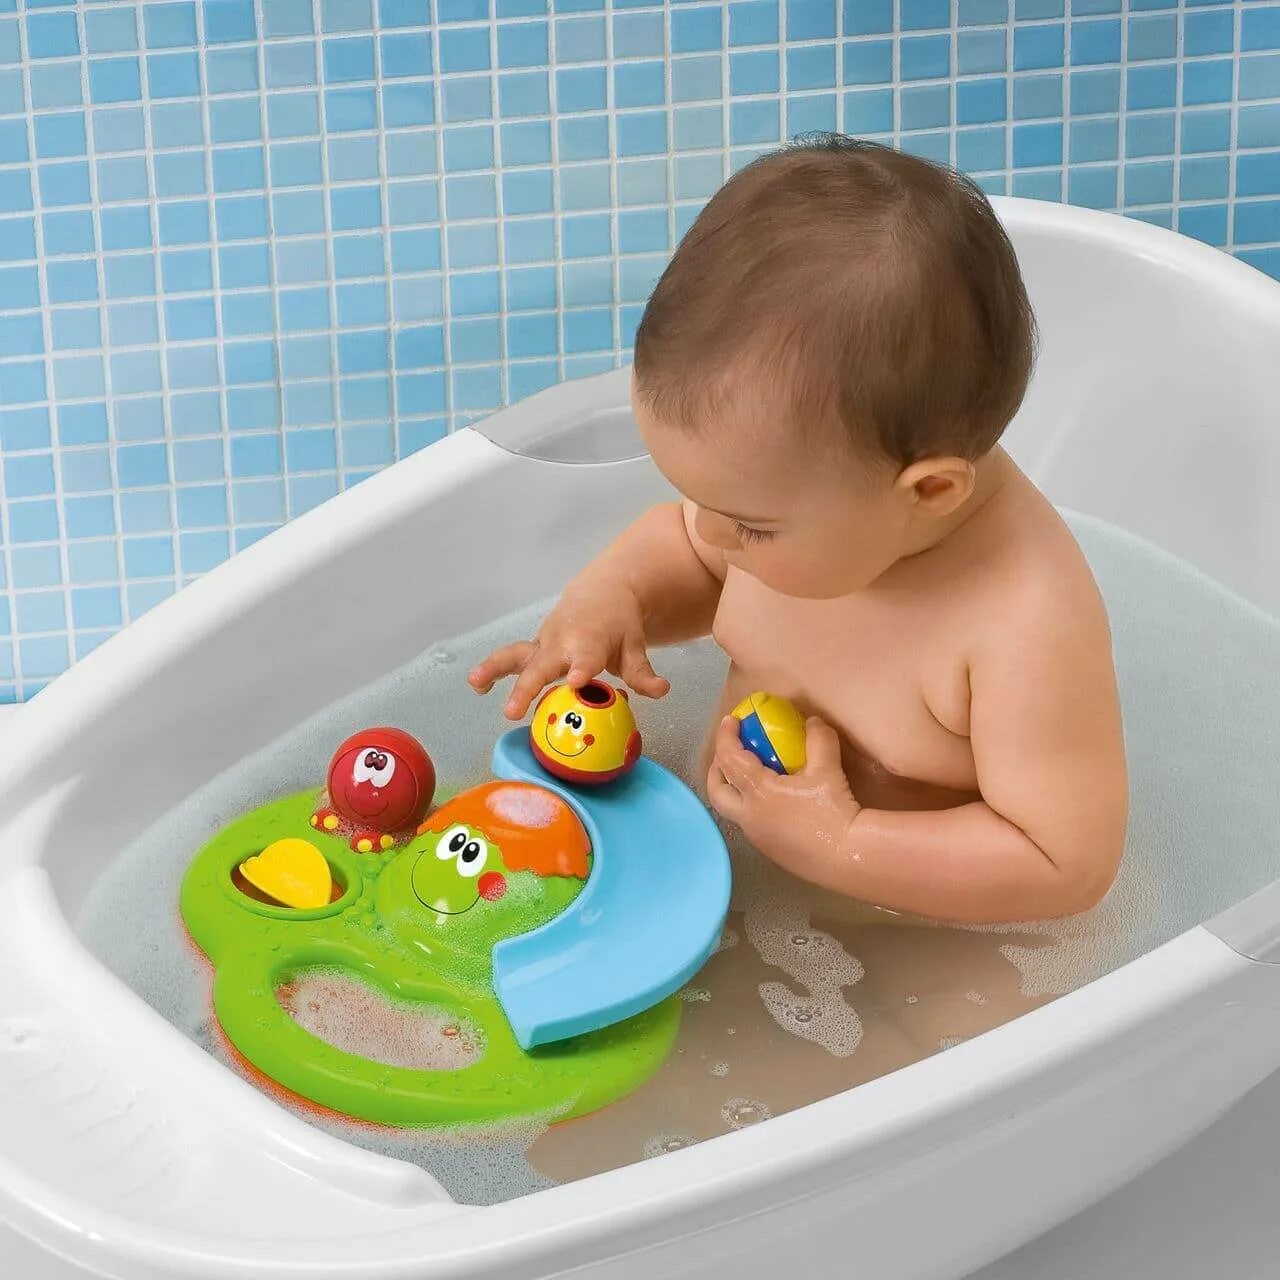 Игрушки Чикко для ванны. Игрушки в ванную для детей. Игрушка для купания в ванной. Игрушки для купания грудничка. Игра ребенок в ванне